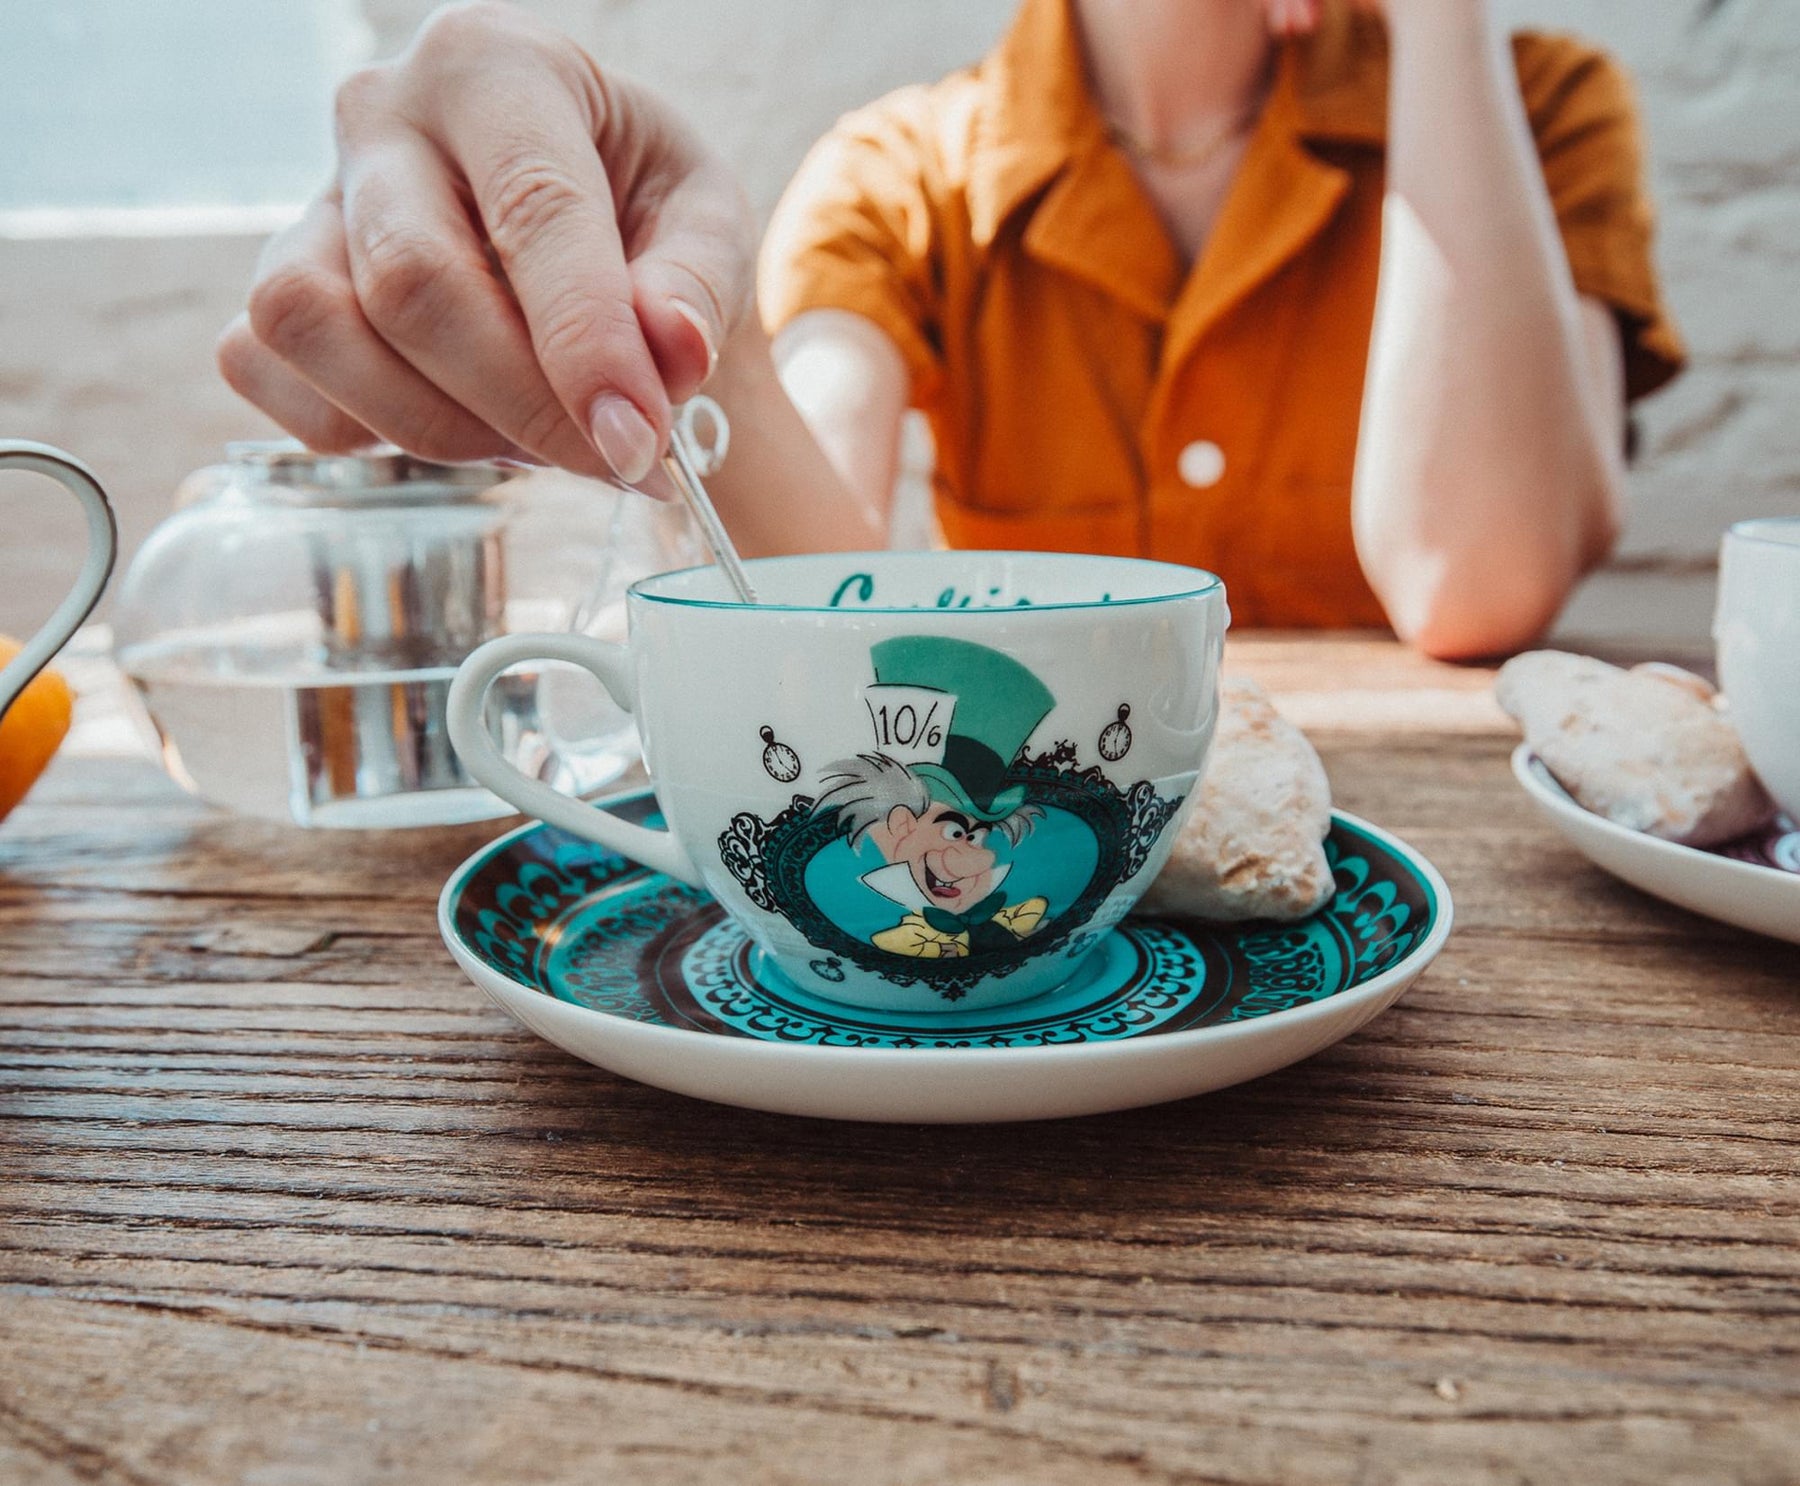 Disney Alice In Wonderland Ceramic Teacup and Saucer Set